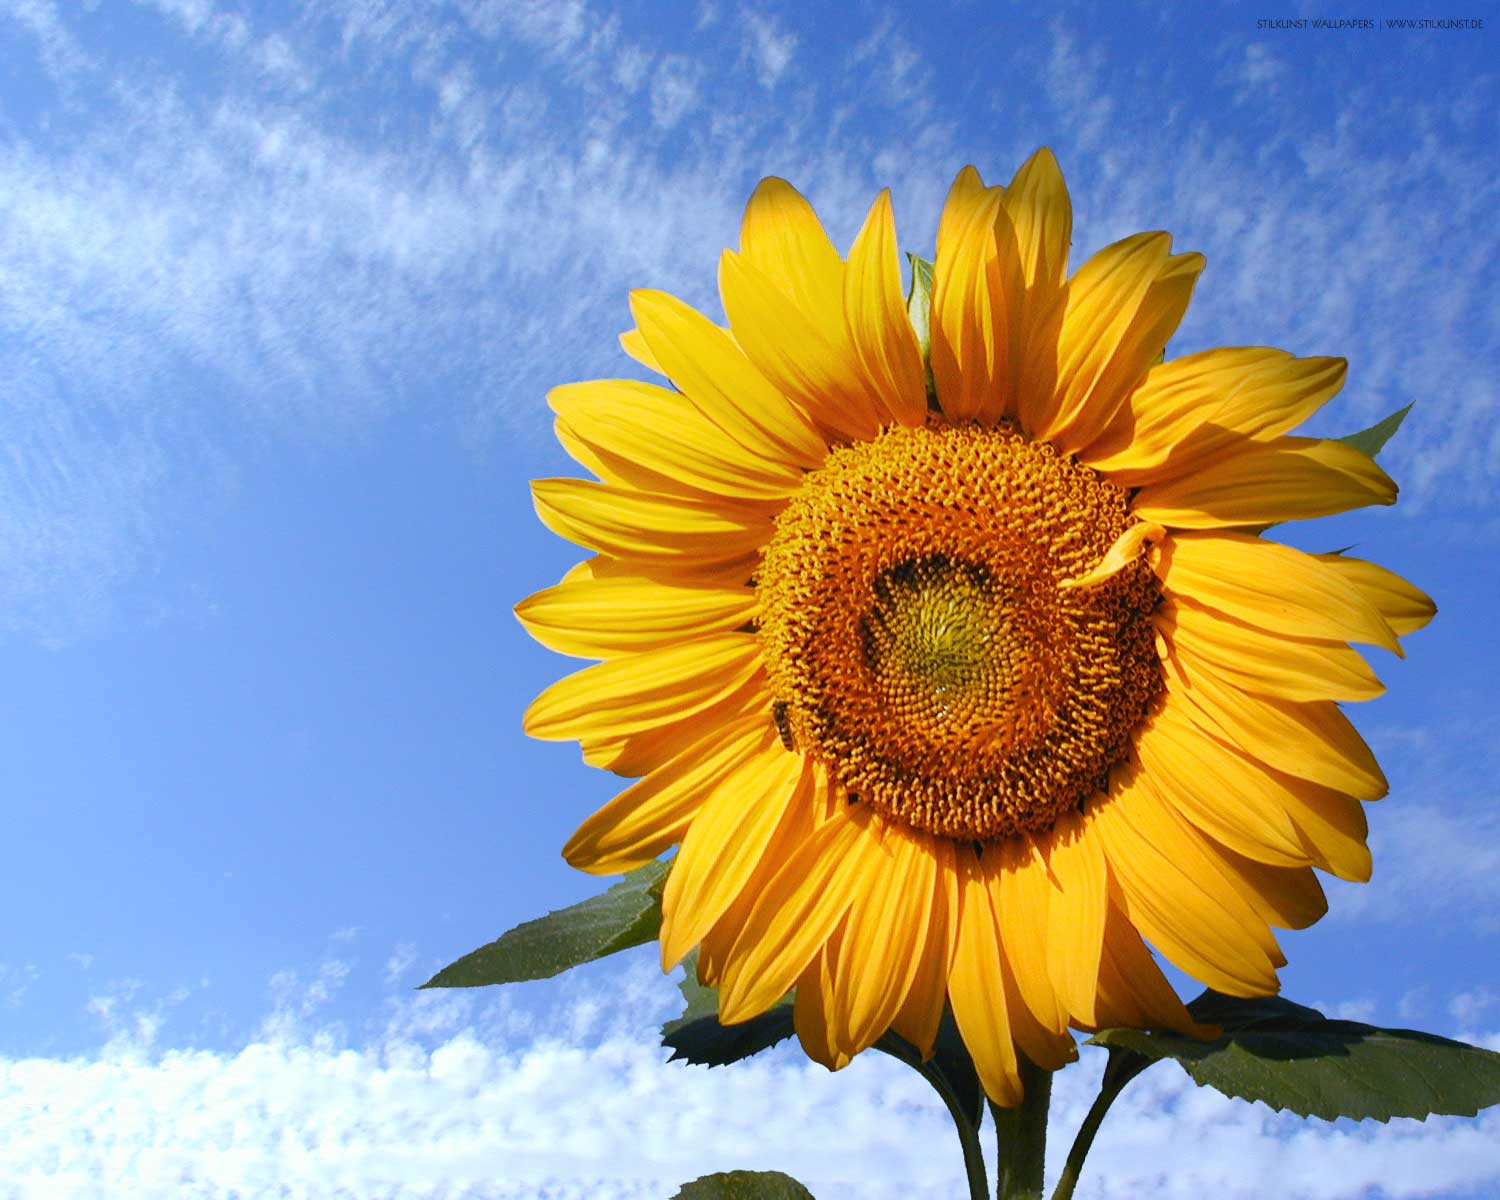 Sonnenblume | 1280 x 1024px | Bild: ©by Sabrina | Reiner | www.stilkunst.de | Lizenz: CC BY-SA